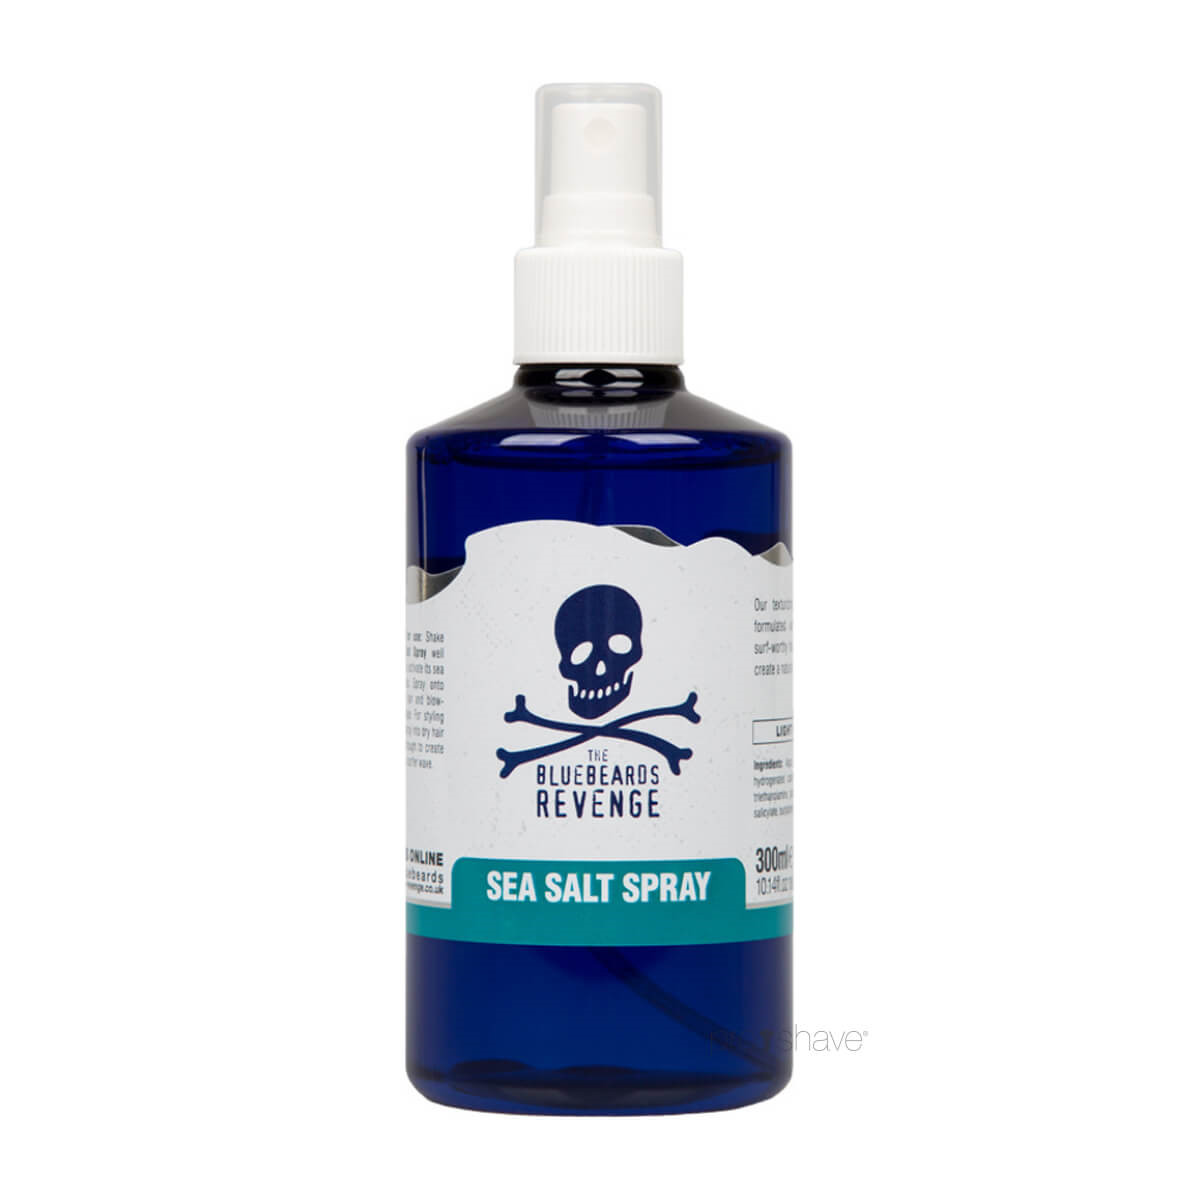 Bluebeards Revenge Sea Salt Spray, 300 ml.